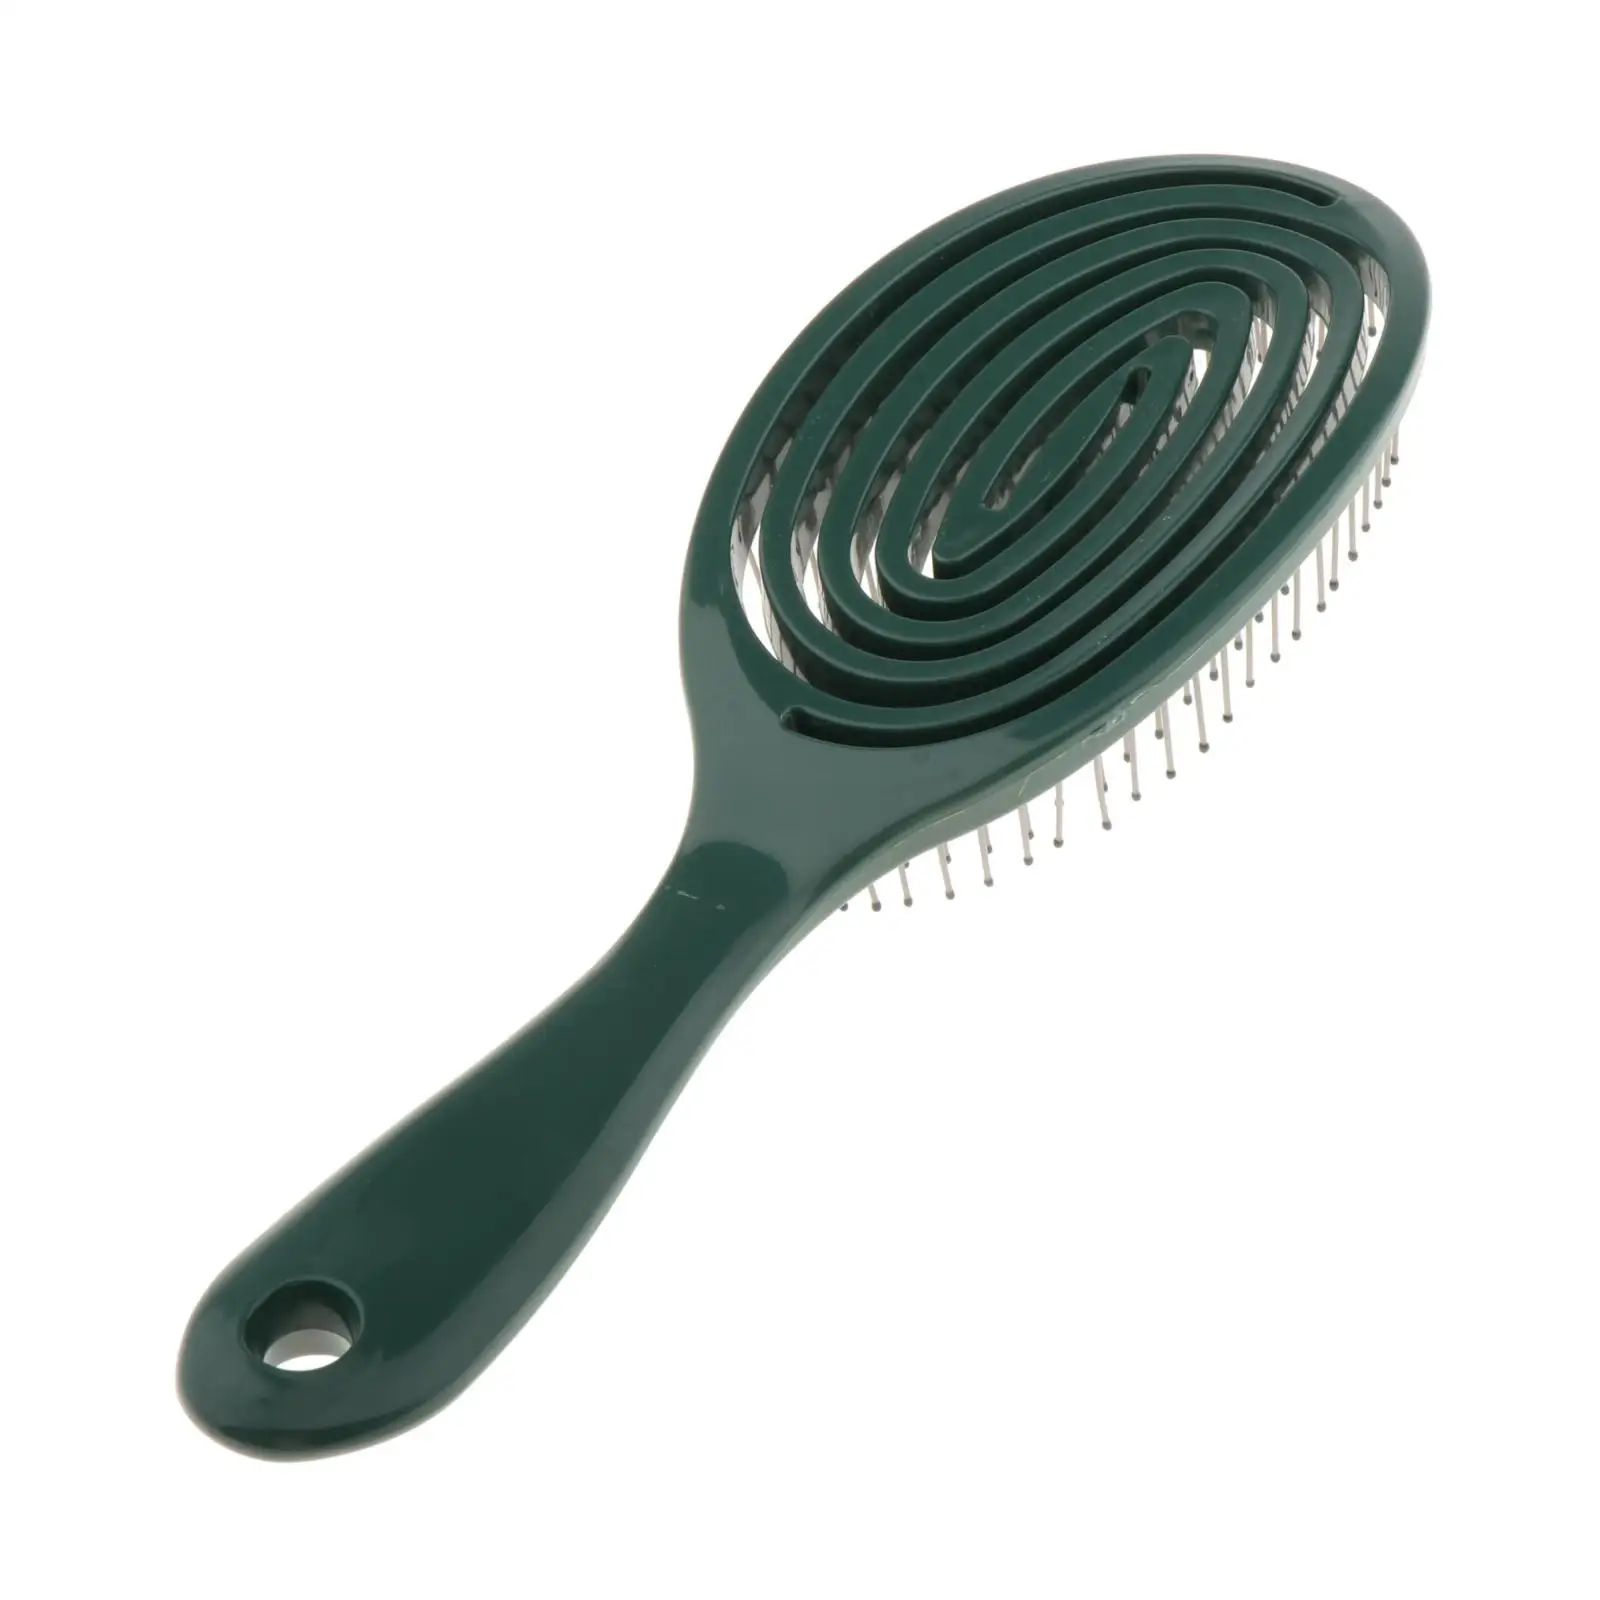 Comb Hair Brush  W/ Handle Hairbrush Dry Men Women Thin & Anti-knot